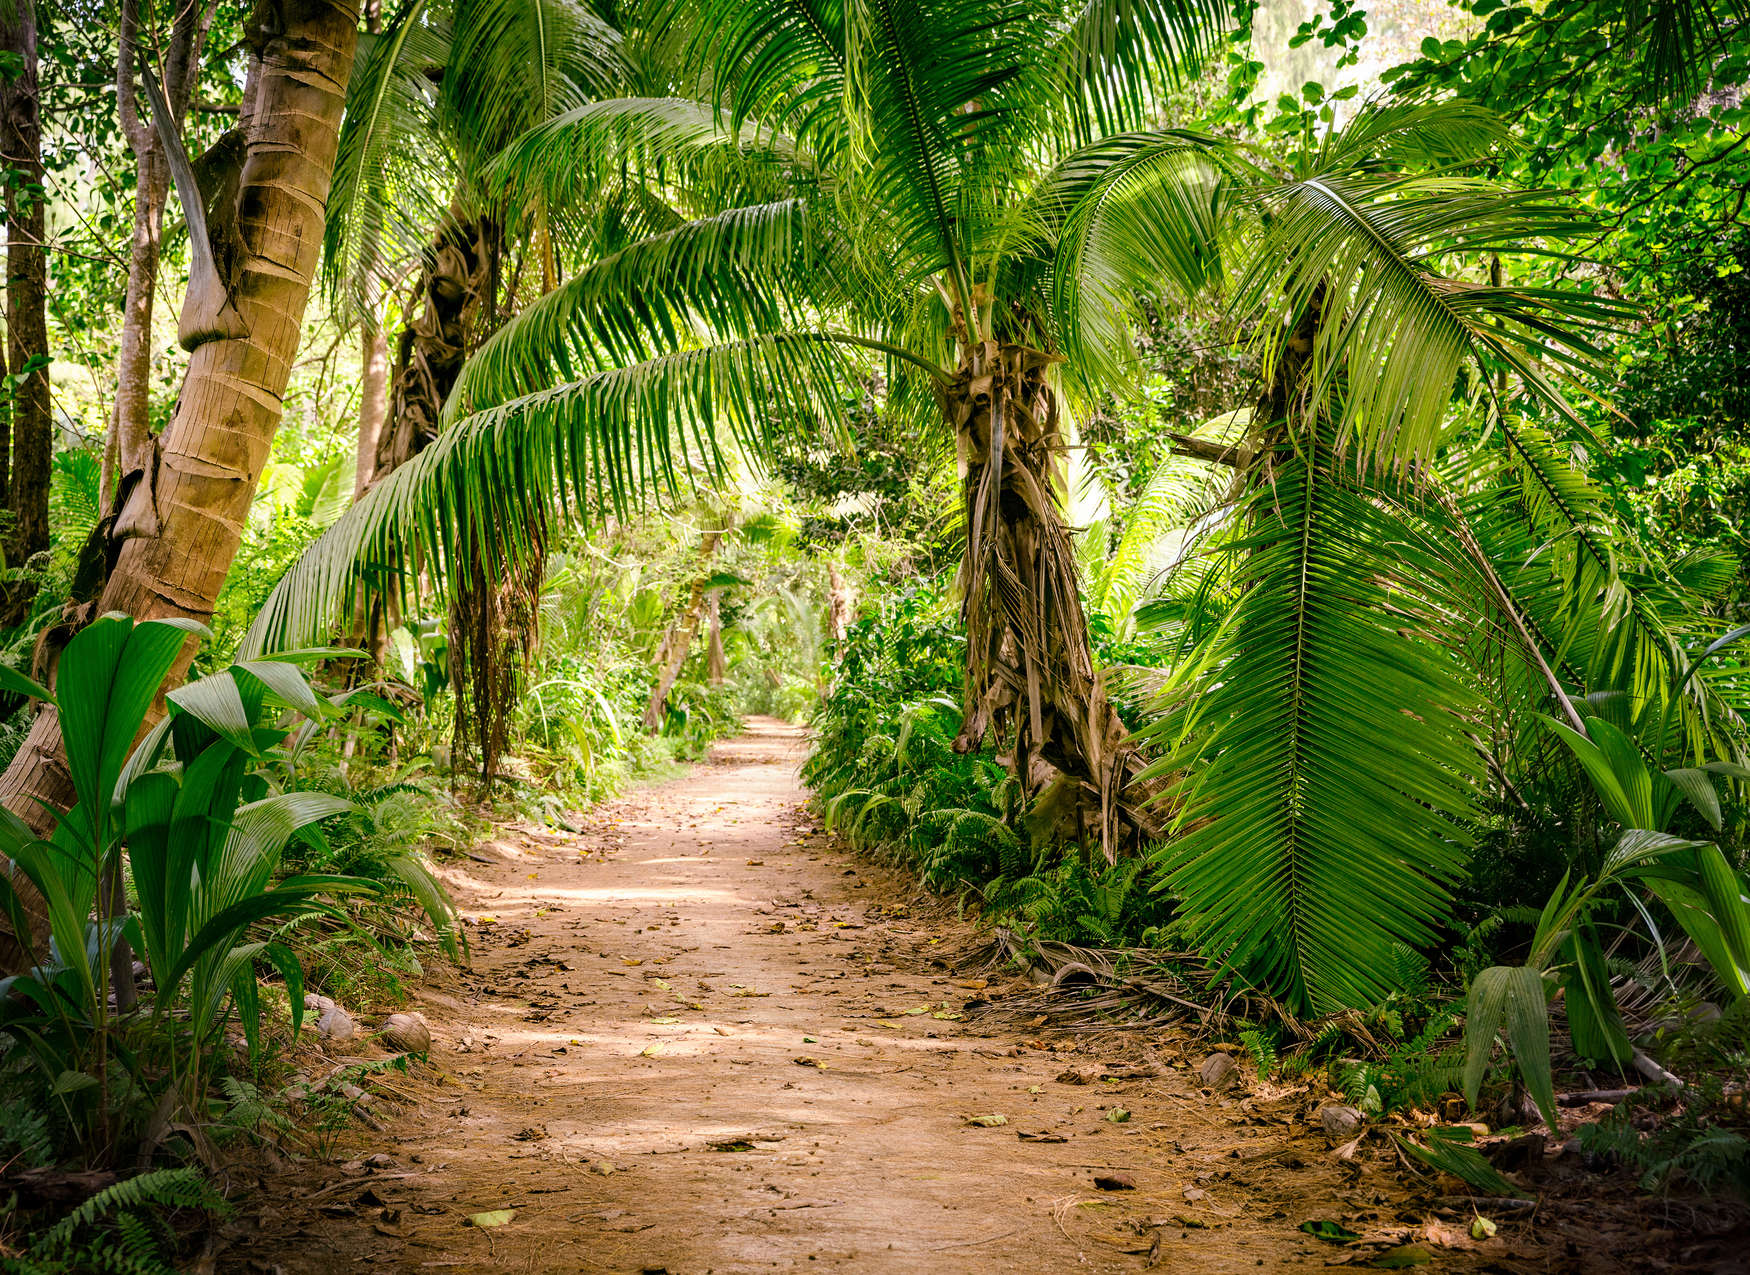             Sentiero delle palme attraverso un paesaggio tropicale - Verde, marrone
        